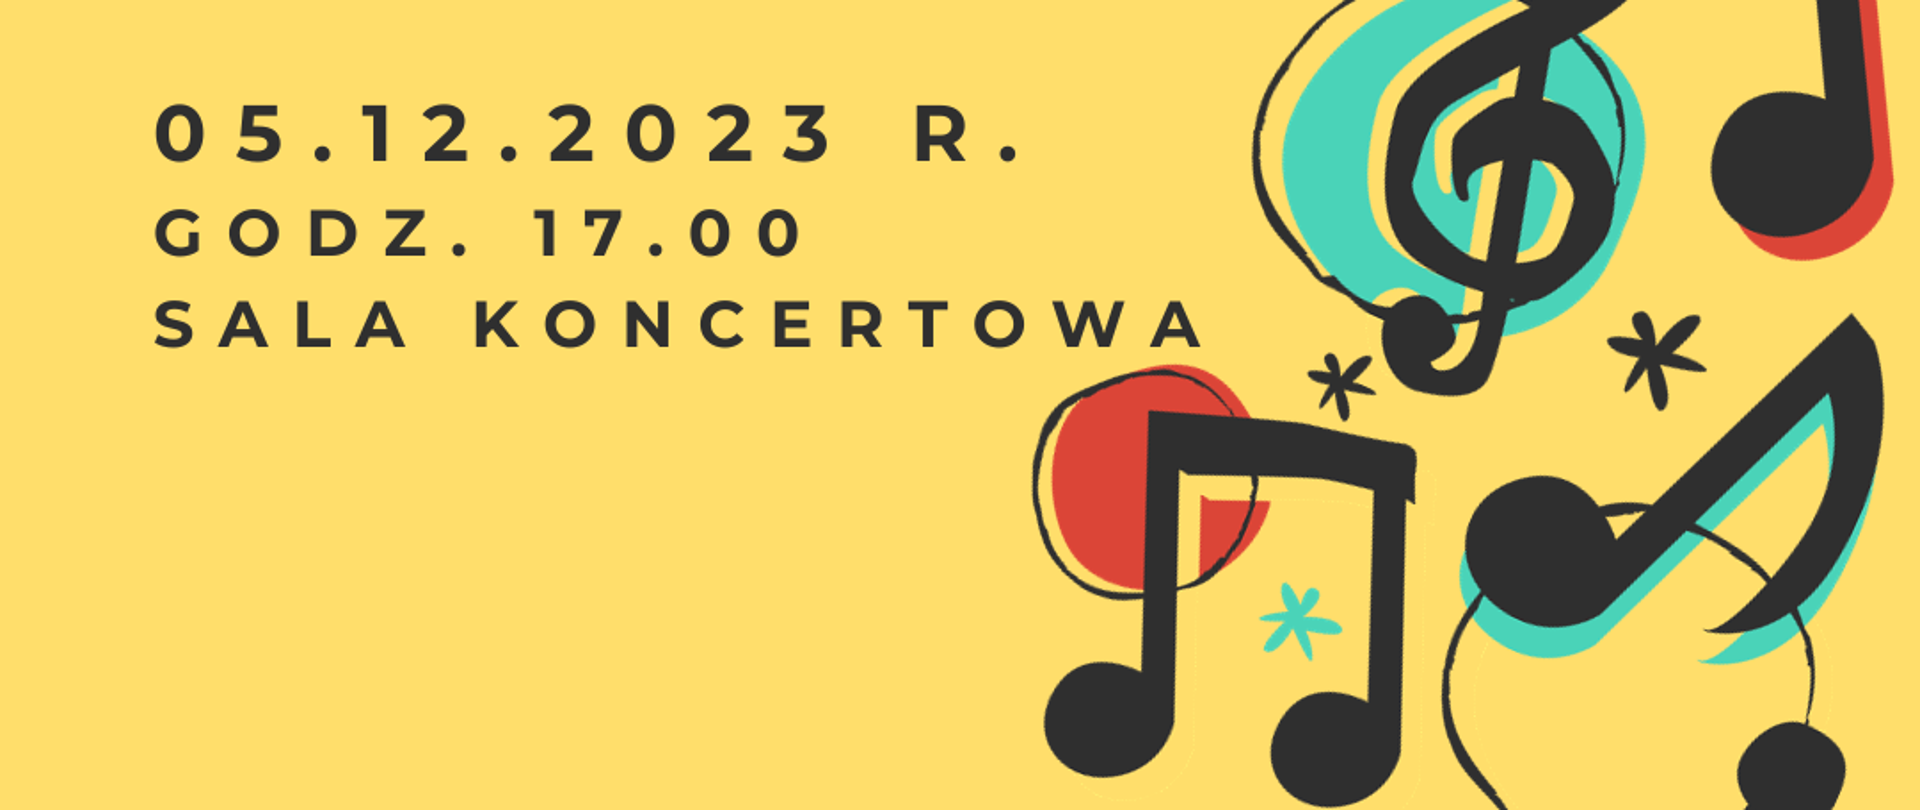 Na żółtym tle tekst: Audycja klasy puzonu, fortepianu, perkusji, skrzypiec, data: 05.12.2023 r., godz. 17.00, miejsce: sala koncertowa. W prawym dolnym rogu klucz wiolinowy oraz nutki w kolorze czarnym.